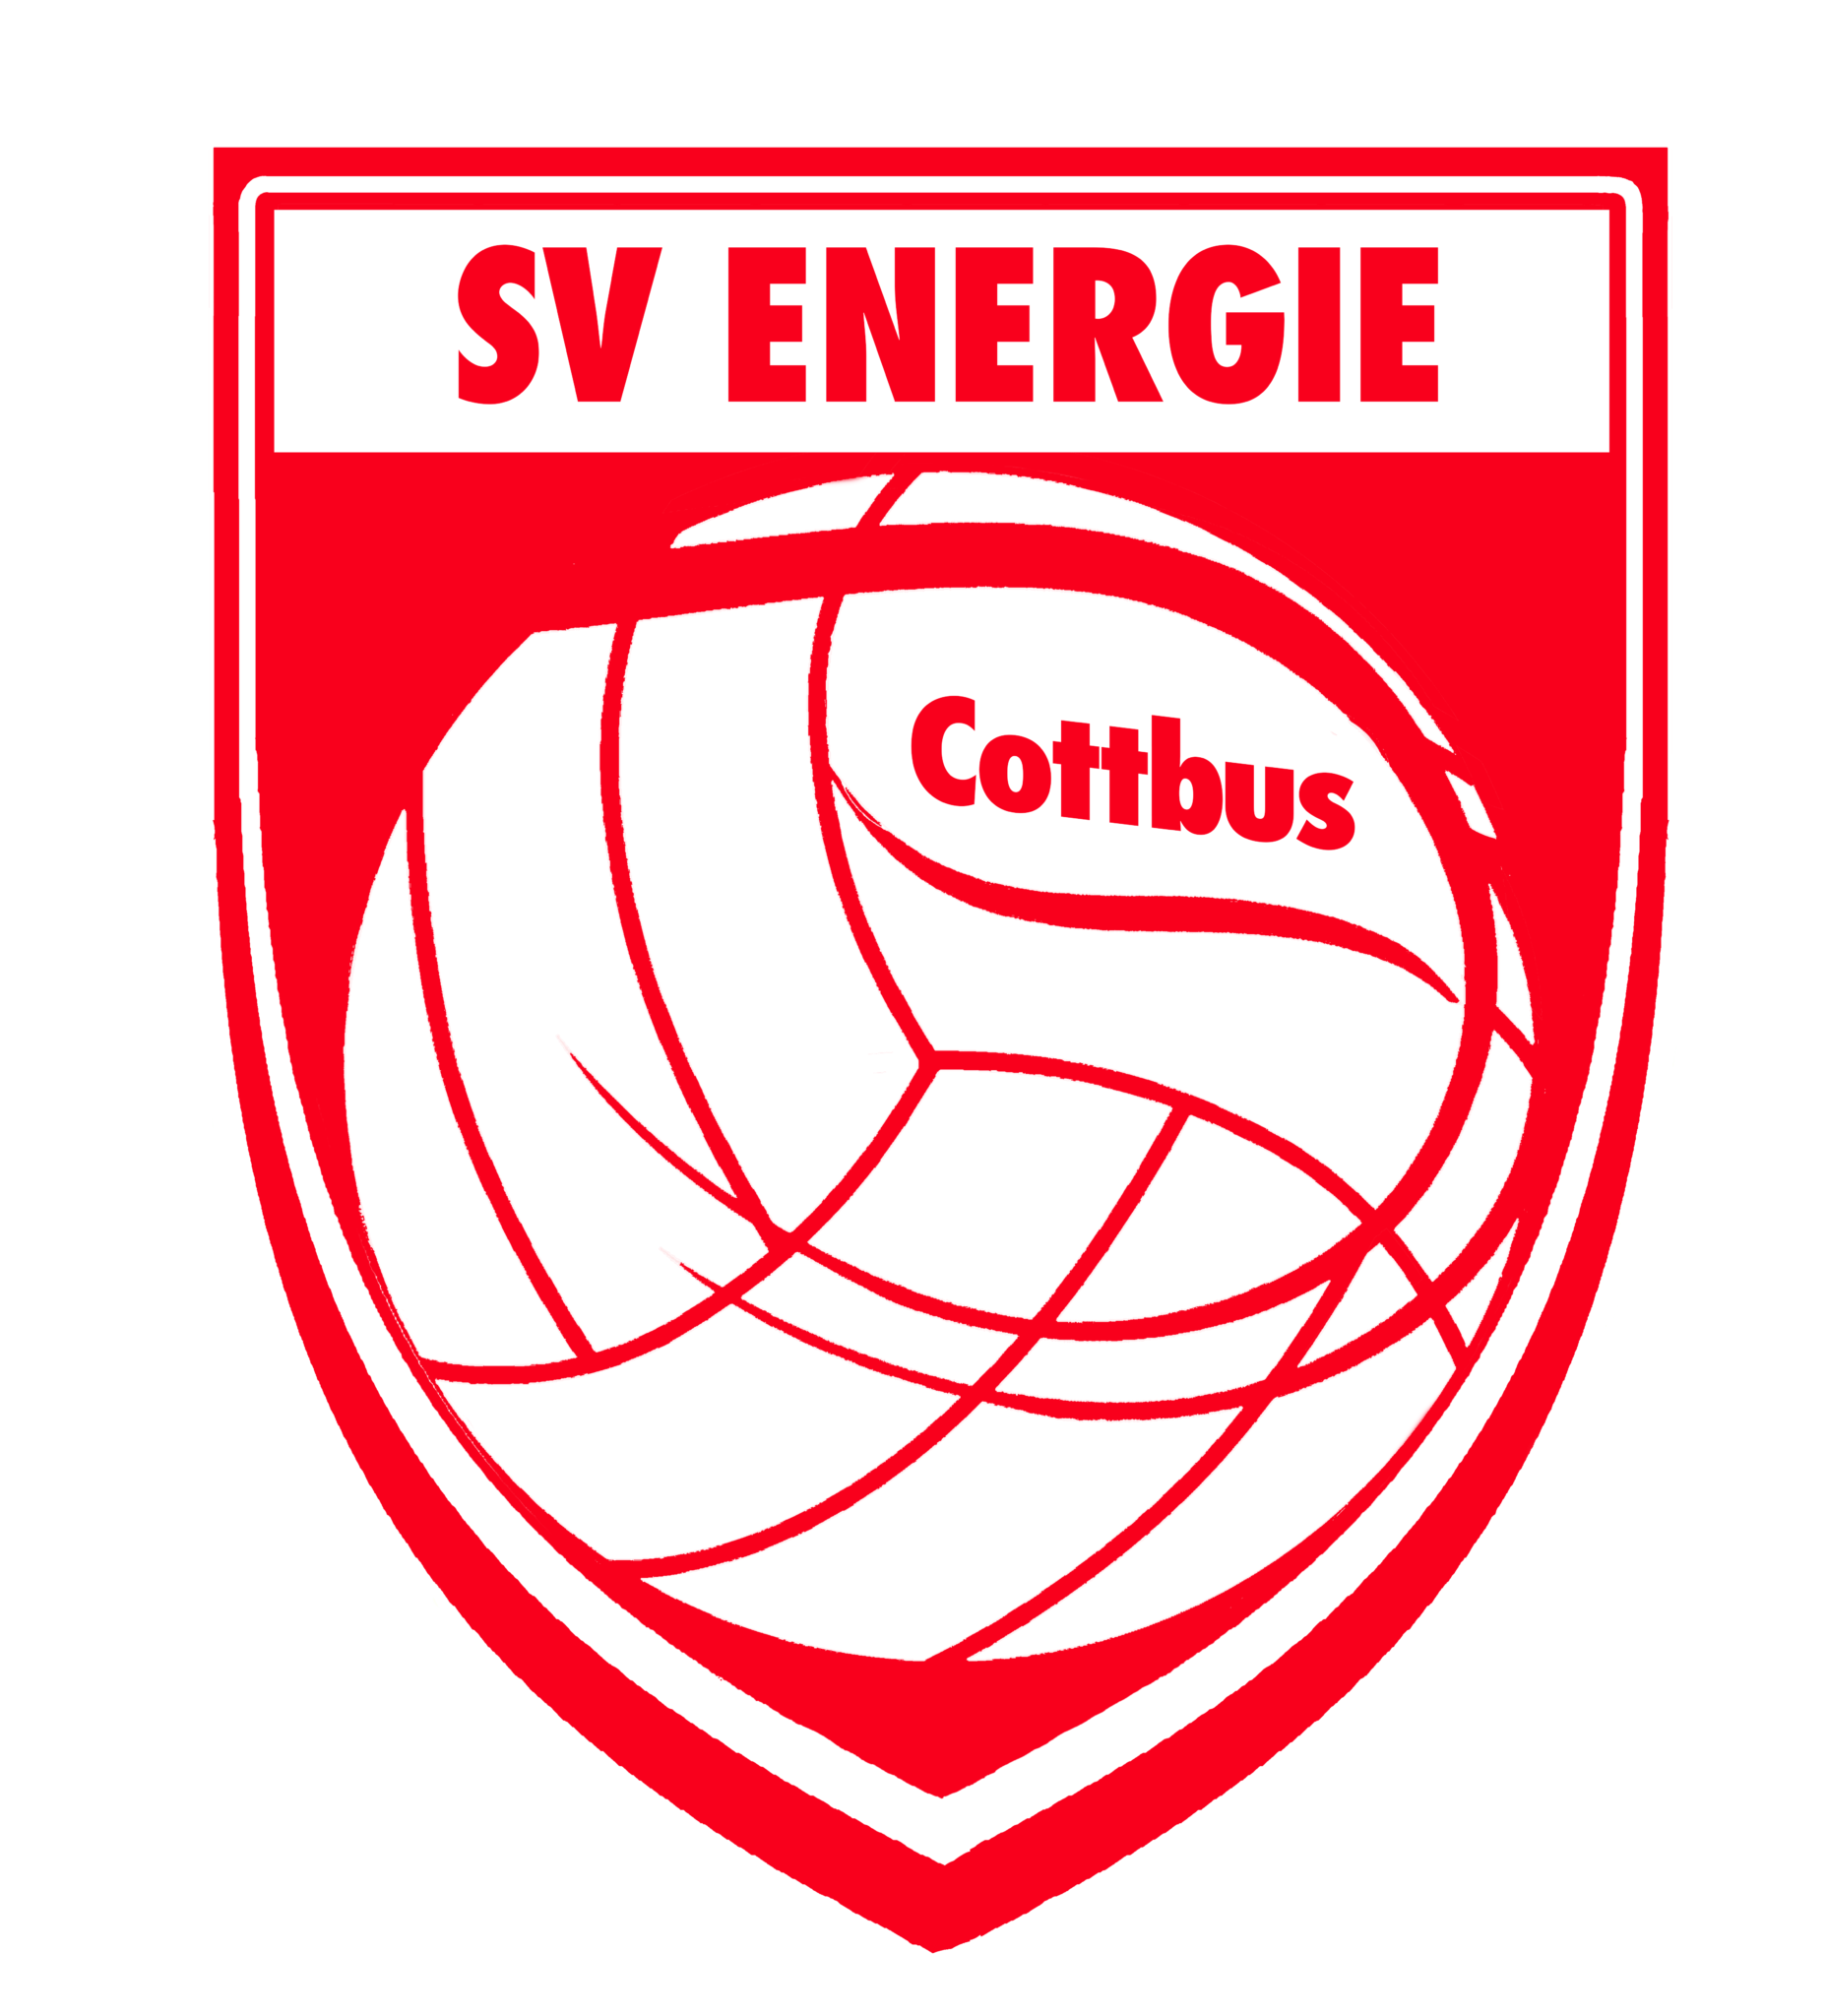 SV Energie Cottbus e.V.